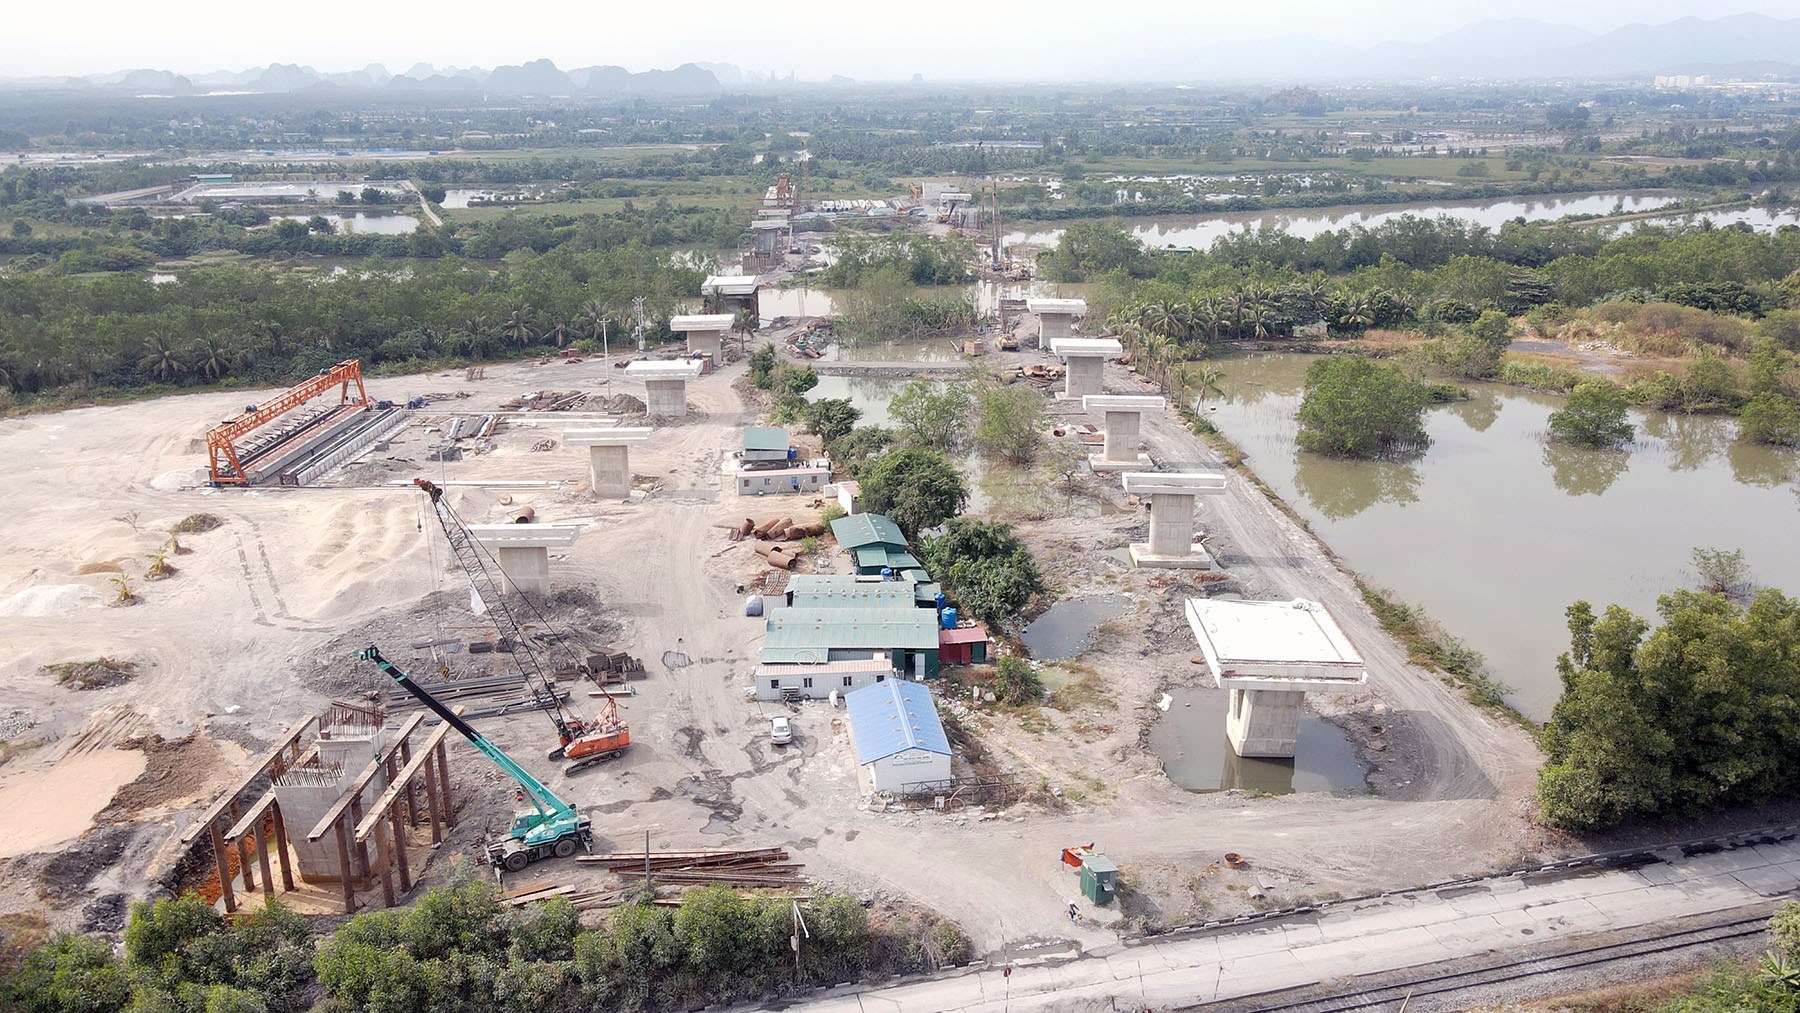 Hình ảnh cầu vượt sông Sinh đang xây dựng ở thành phố Đông Triều, Quảng Ninh